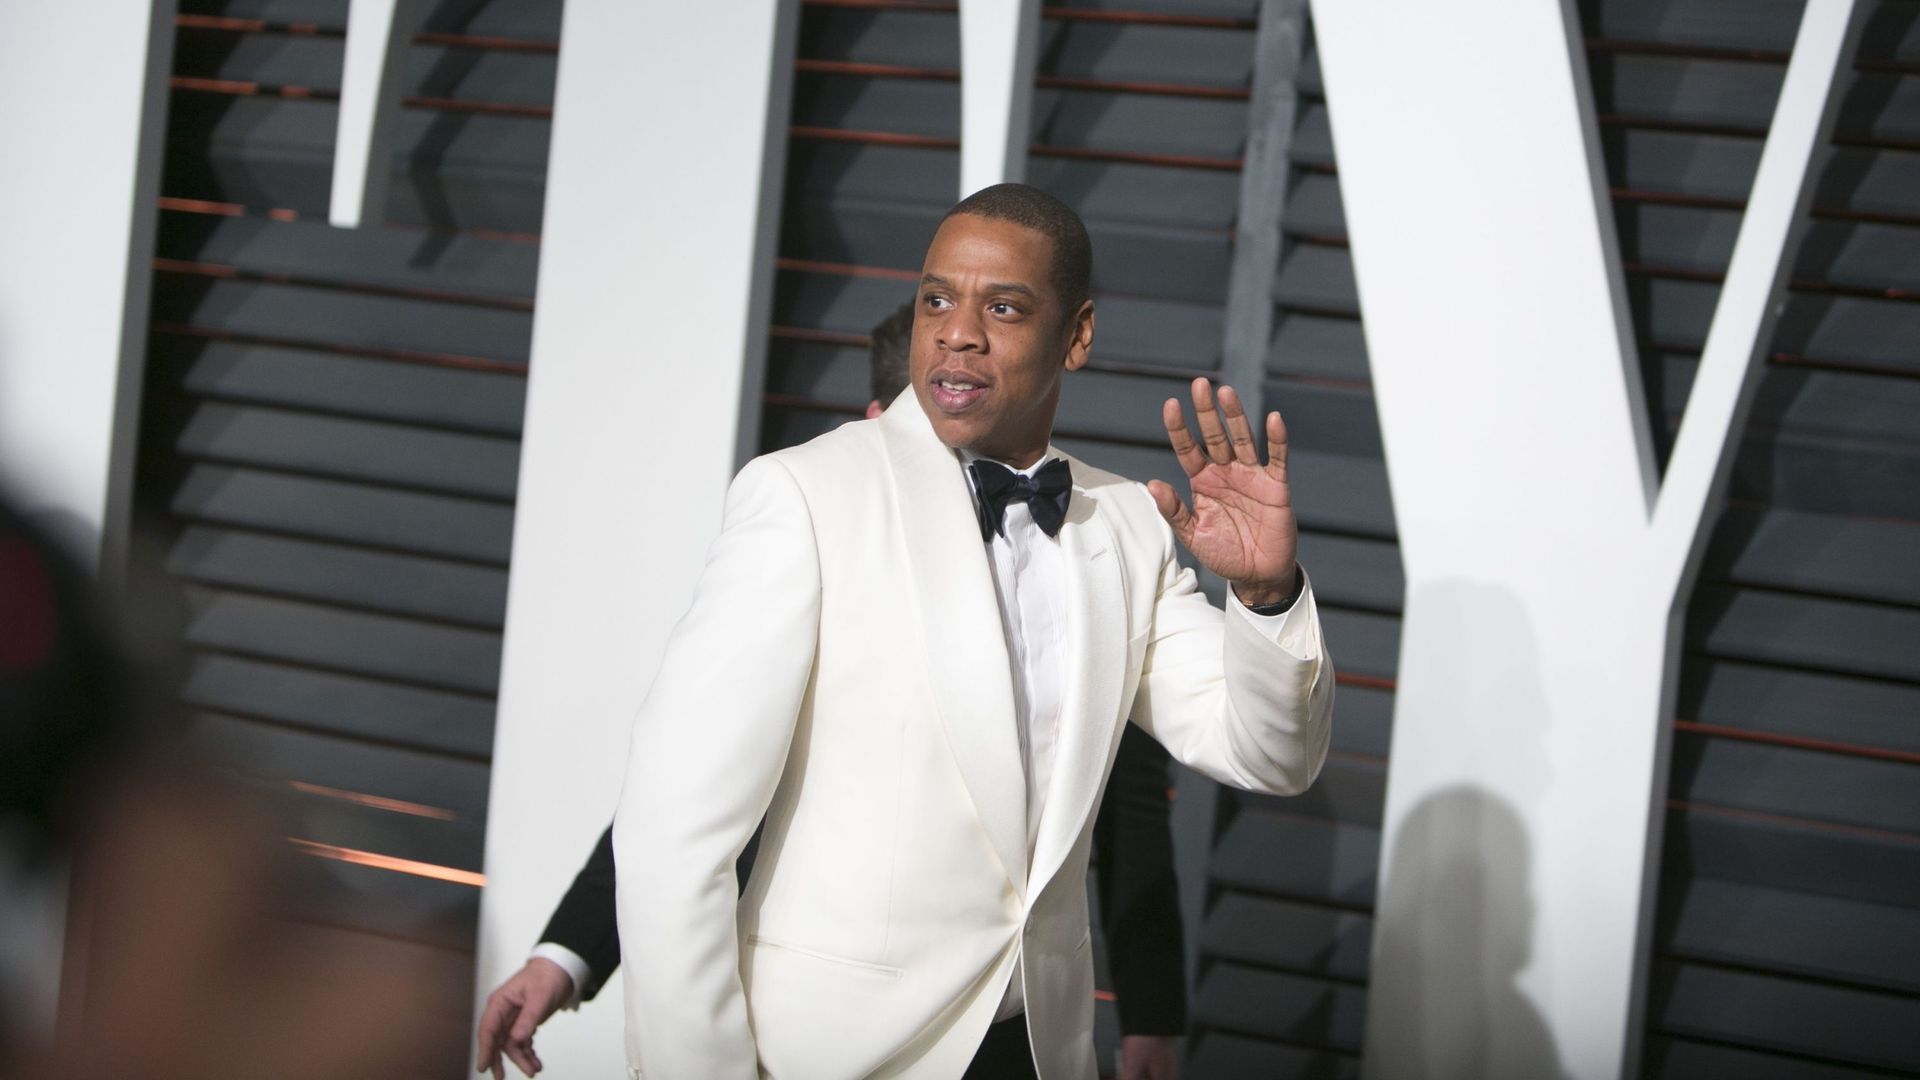 Jay-Z est ex aequo avec Kylie Jenner dans le classement des personnalités les plus riches d'Amérique du magazine Forbes.